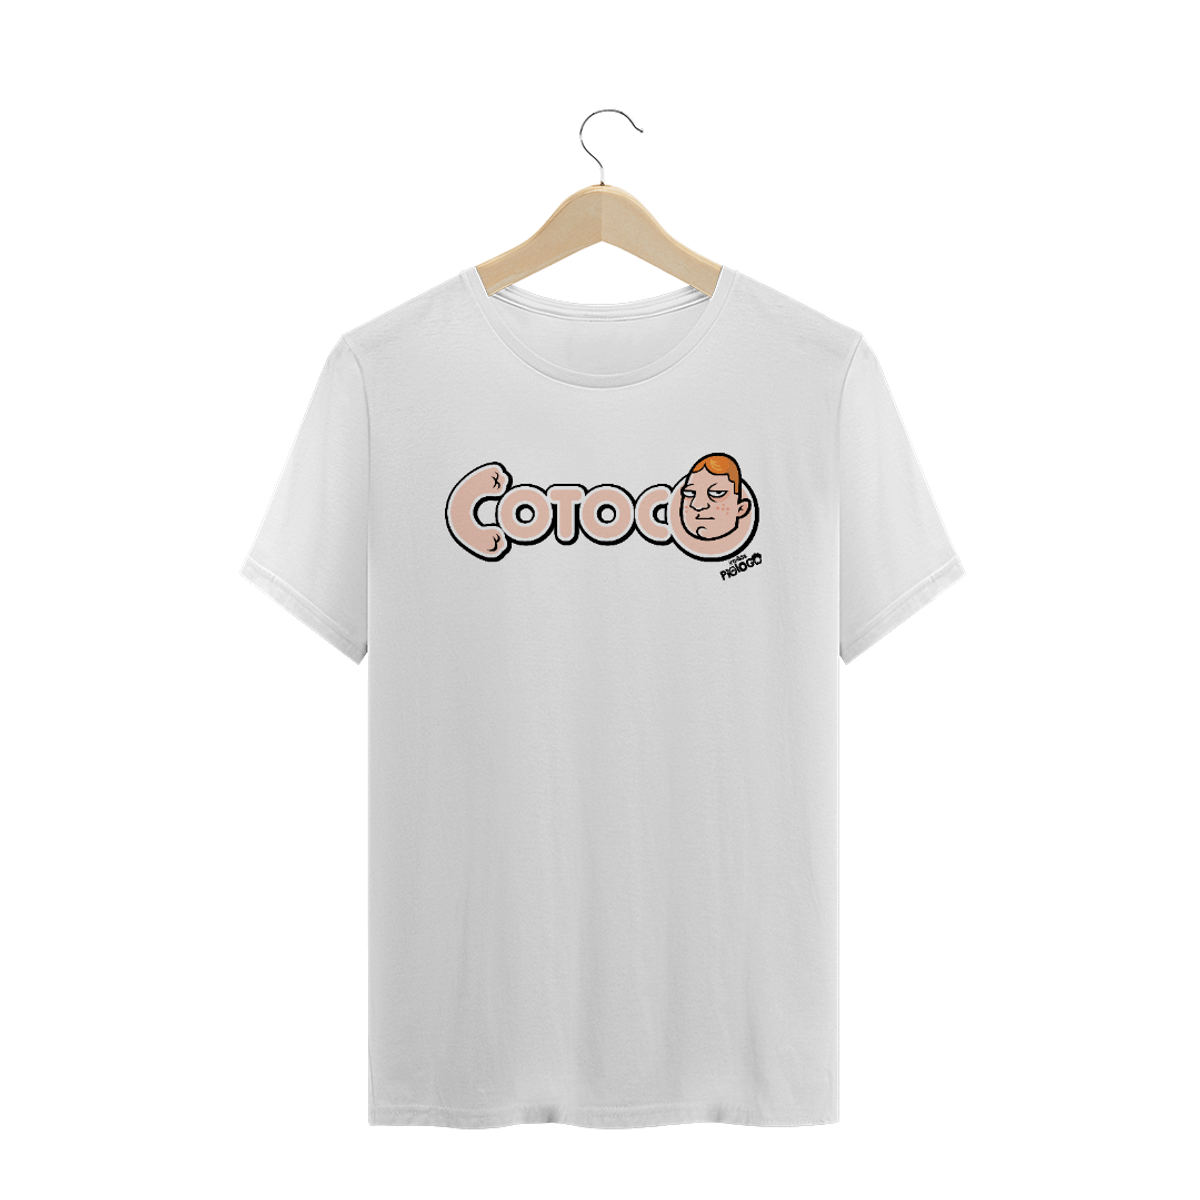 Nome do produto: Camiseta Cotoco